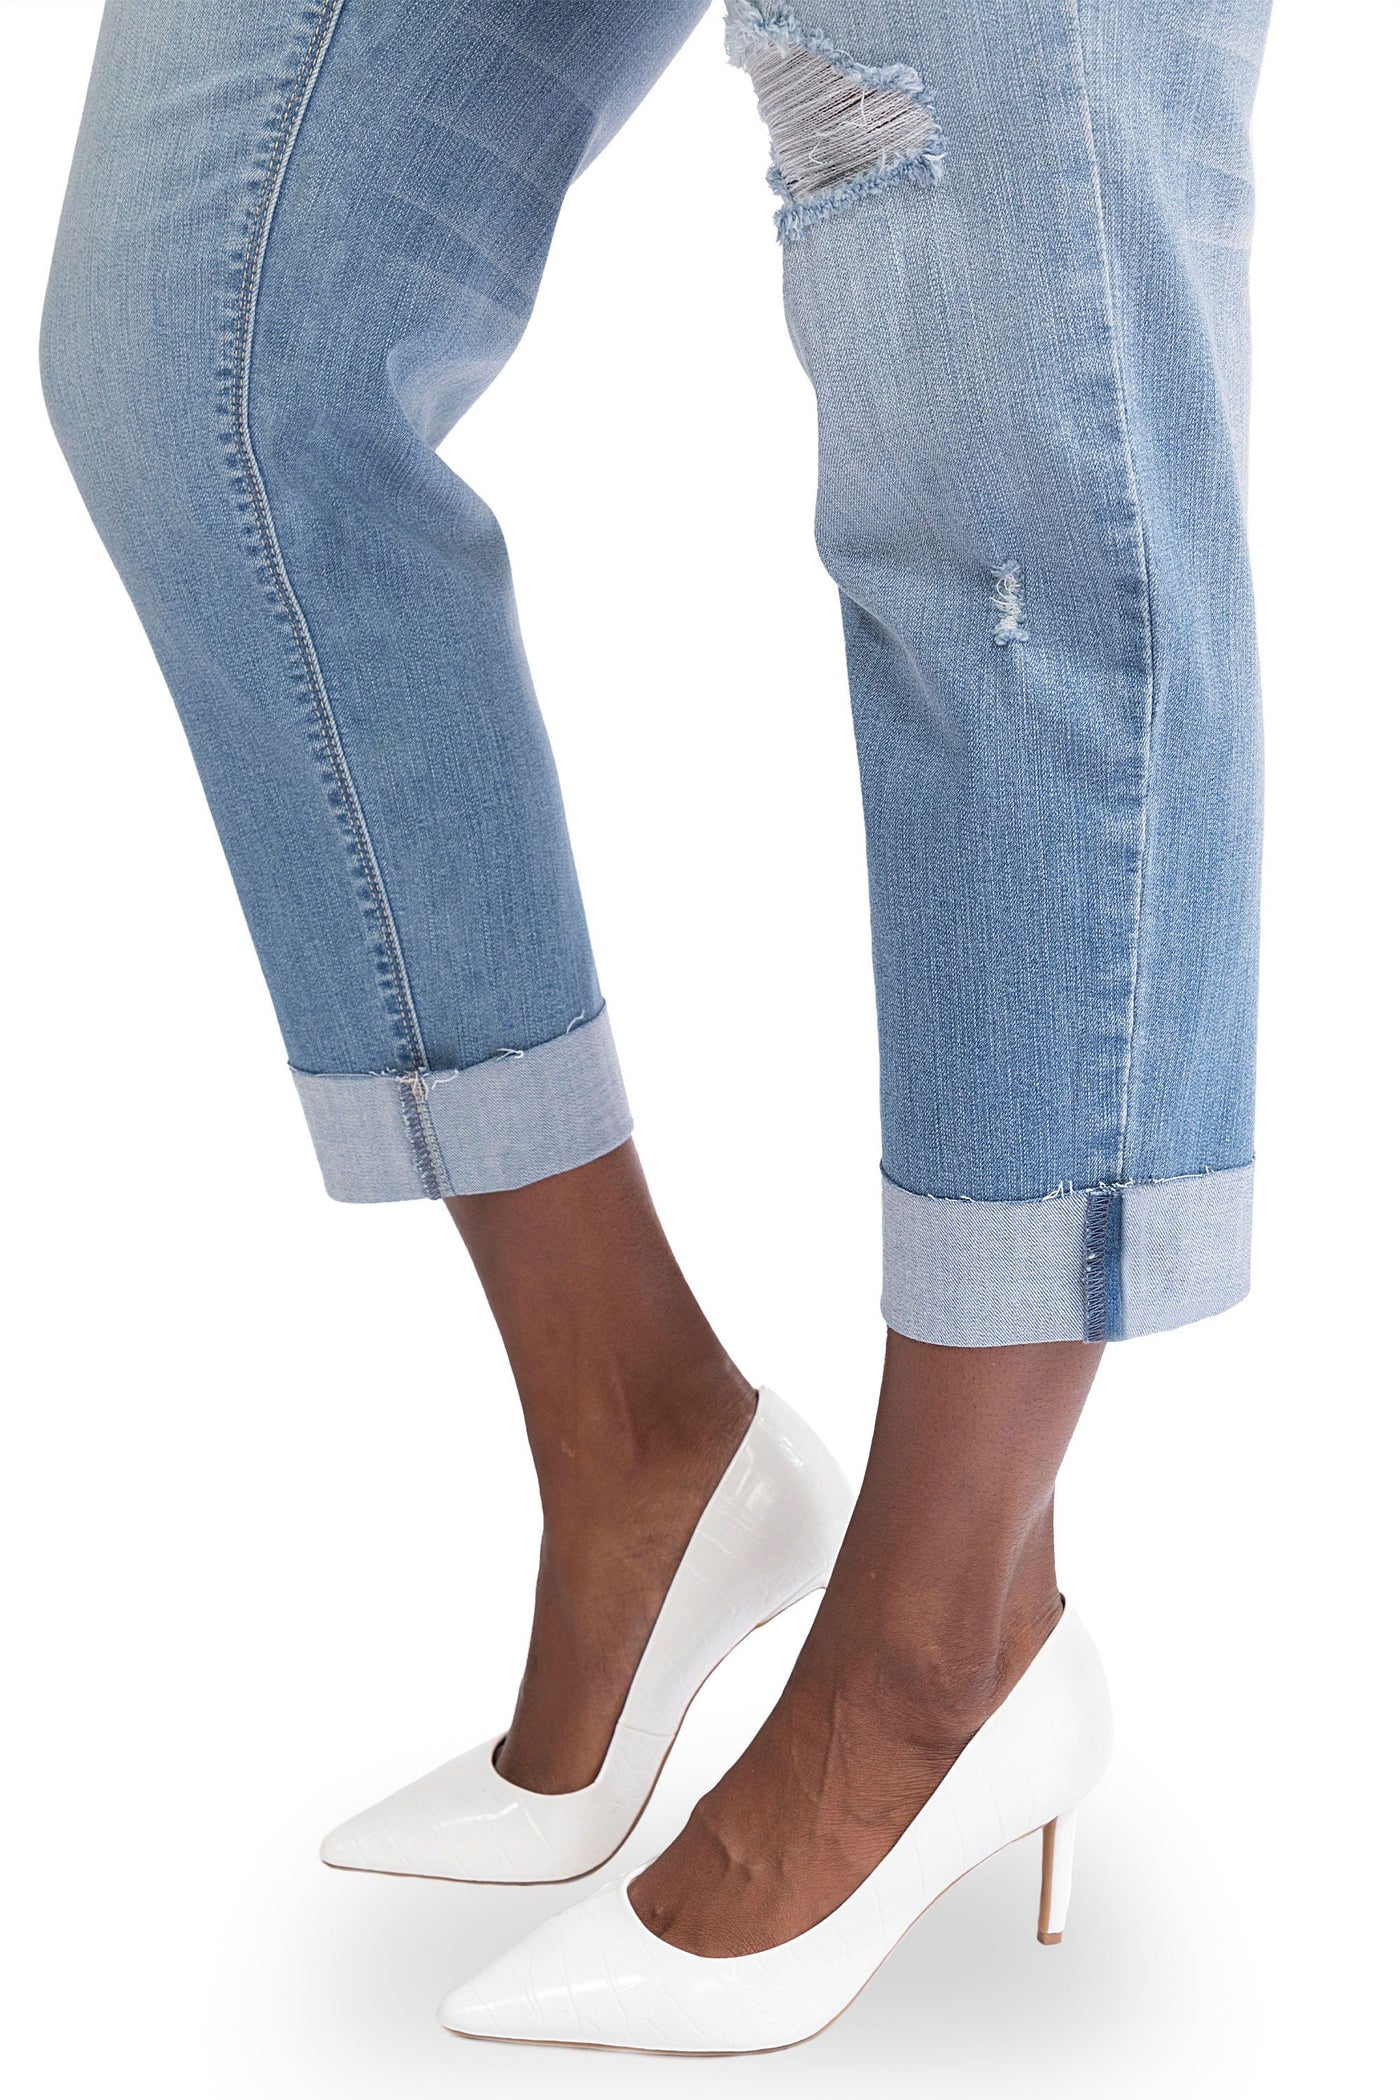 1826 Jeans Women's Plus Size Cuff Rolled Capri Bermuda Short Curvy Denim  Jean - 2799 